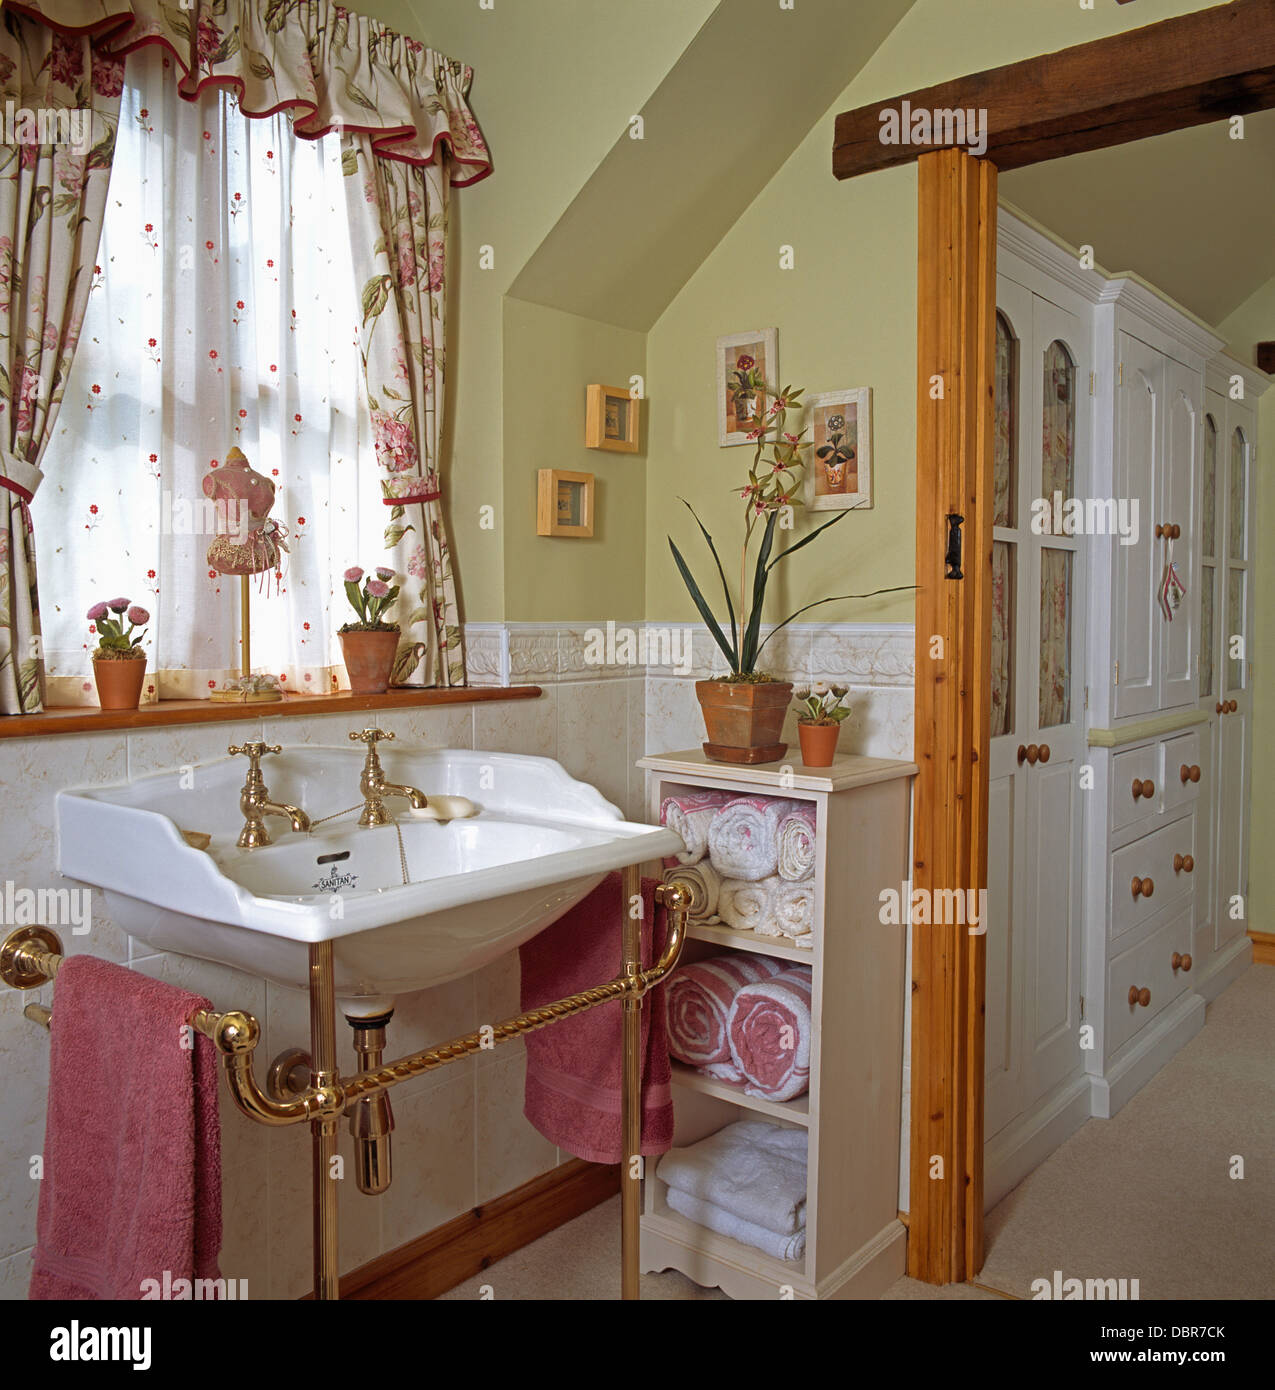 De velo blanco y cortinas con motivos florales en la ventana anterior en la cuenca de cuarto de baño privado con toallas enrolladas almacenados en estantería Foto de stock